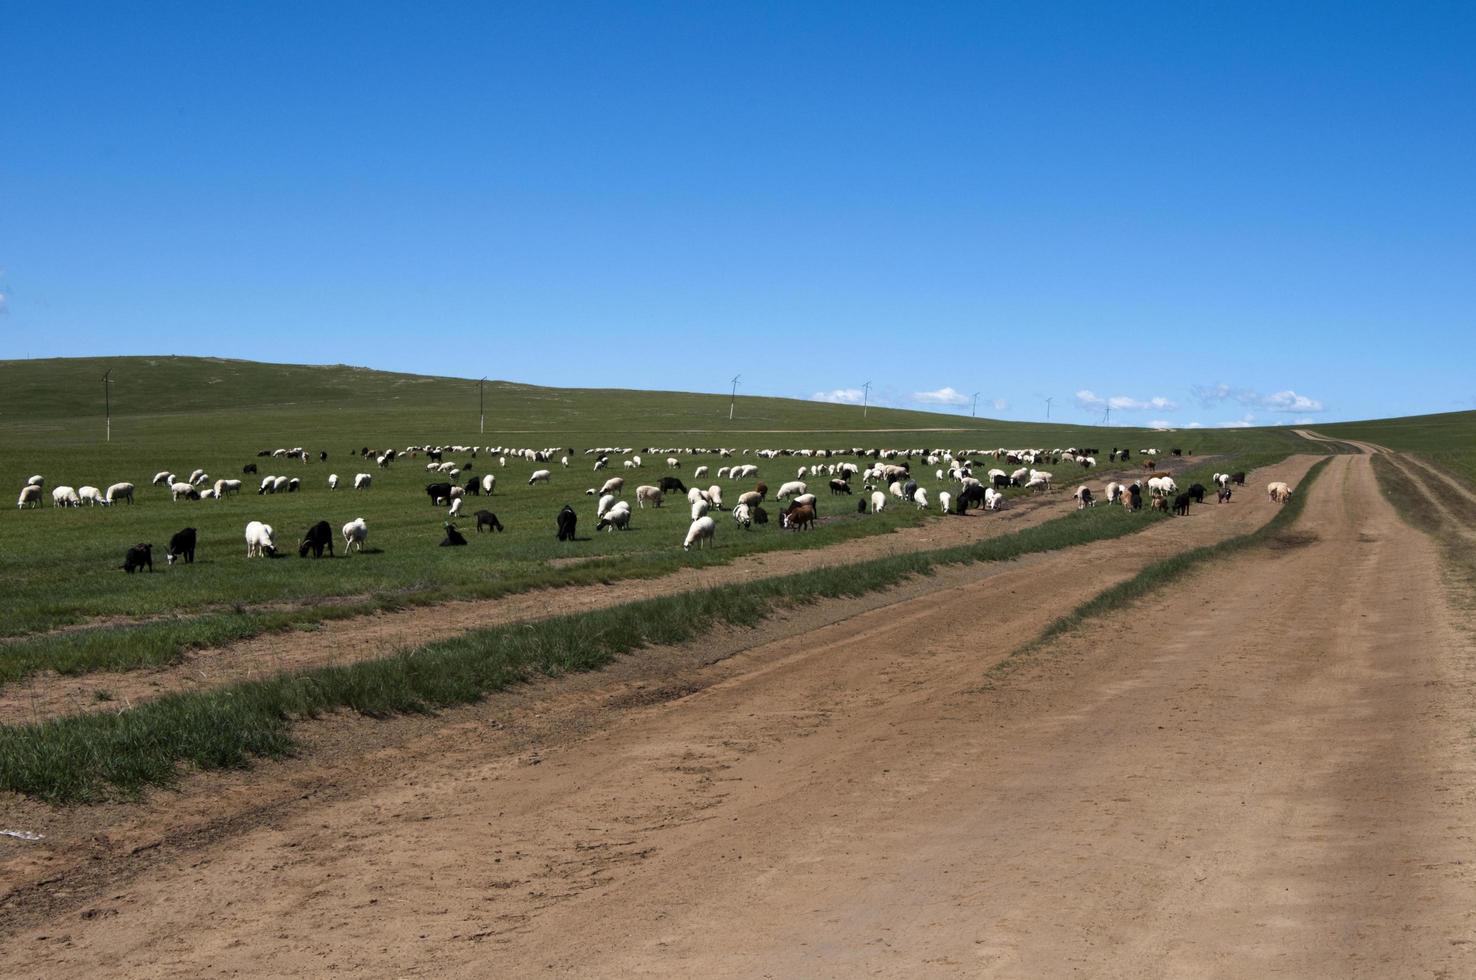 enorme rebanho de cabras e ovelhas comendo grama juntos ao lado de uma estrada de terra. céu azul, sem pessoas. Mongólia. foto